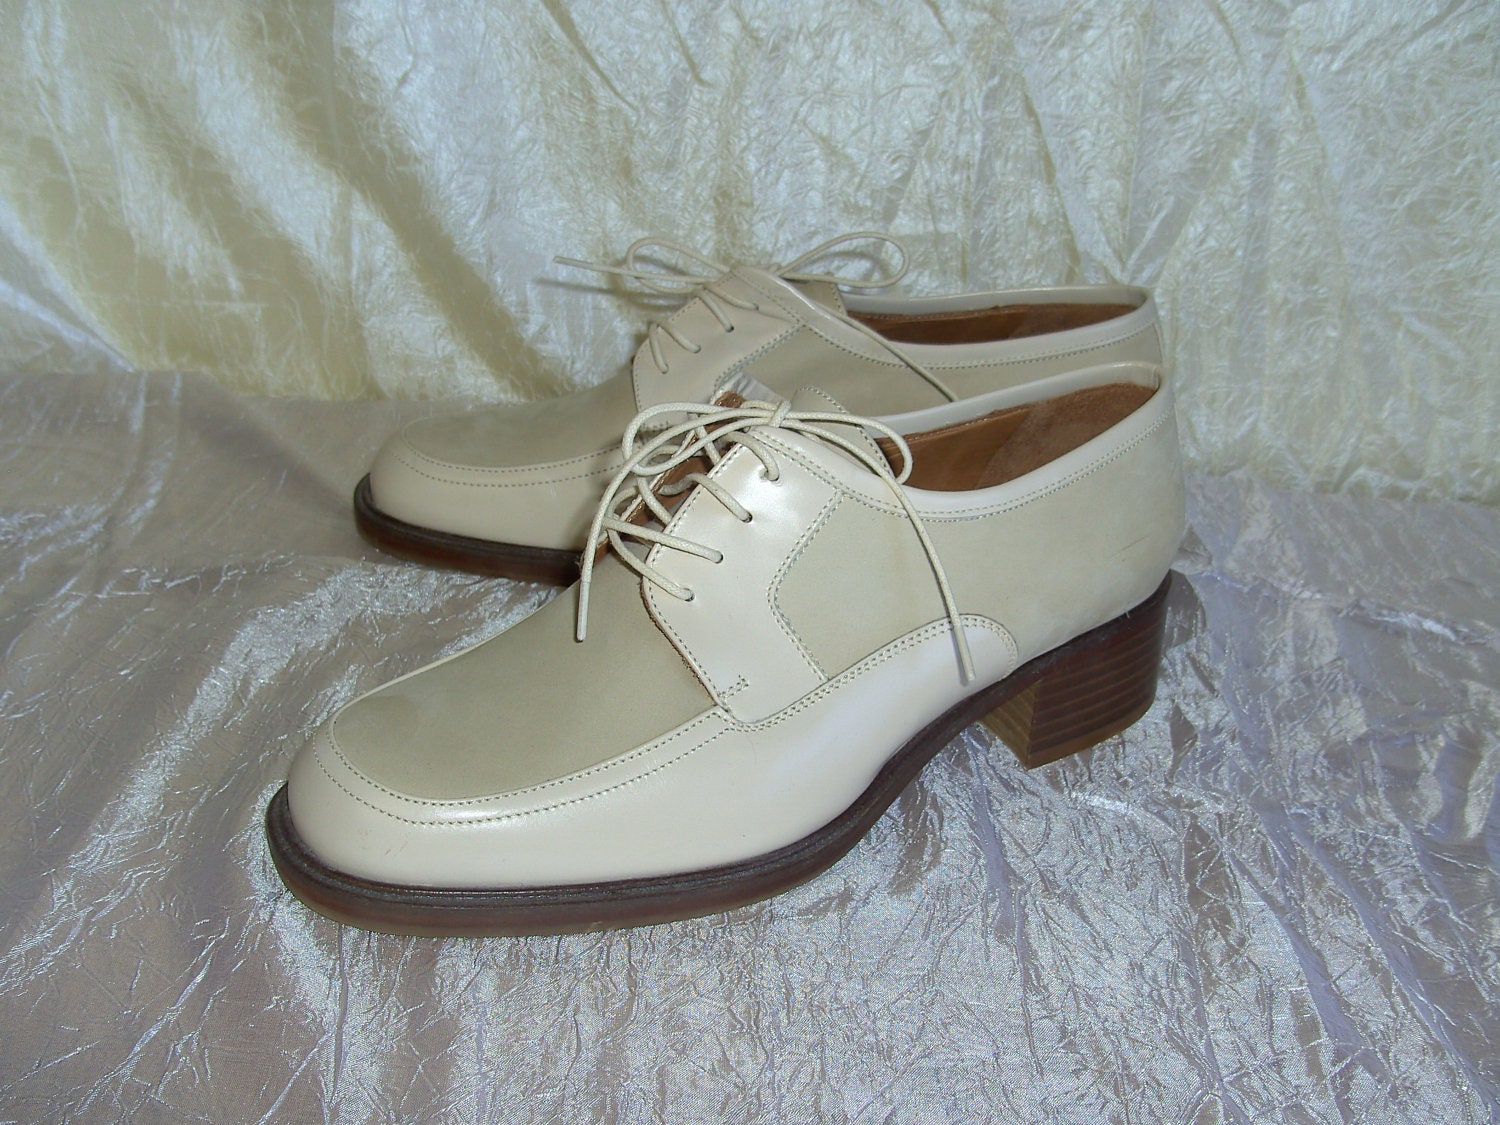 Vintage 1980s Coach Ladies Oxford Shoes Size 8M Never Worn